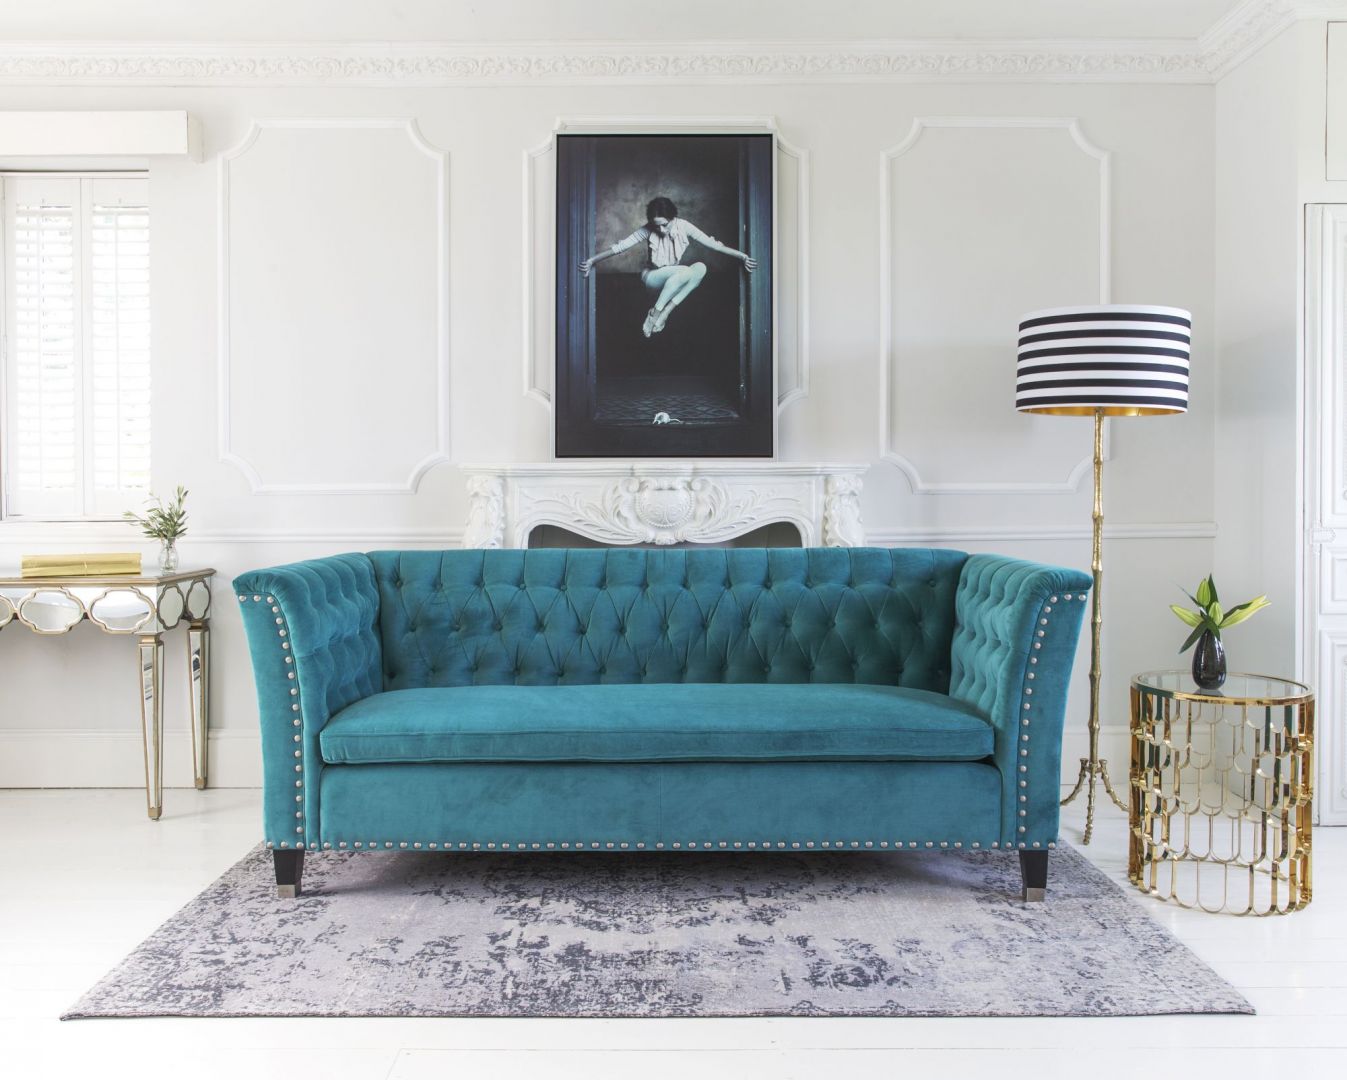 Kolorowa sofa to świetny sposób na mocny akcent w salonie. Fot. The French Bedroom